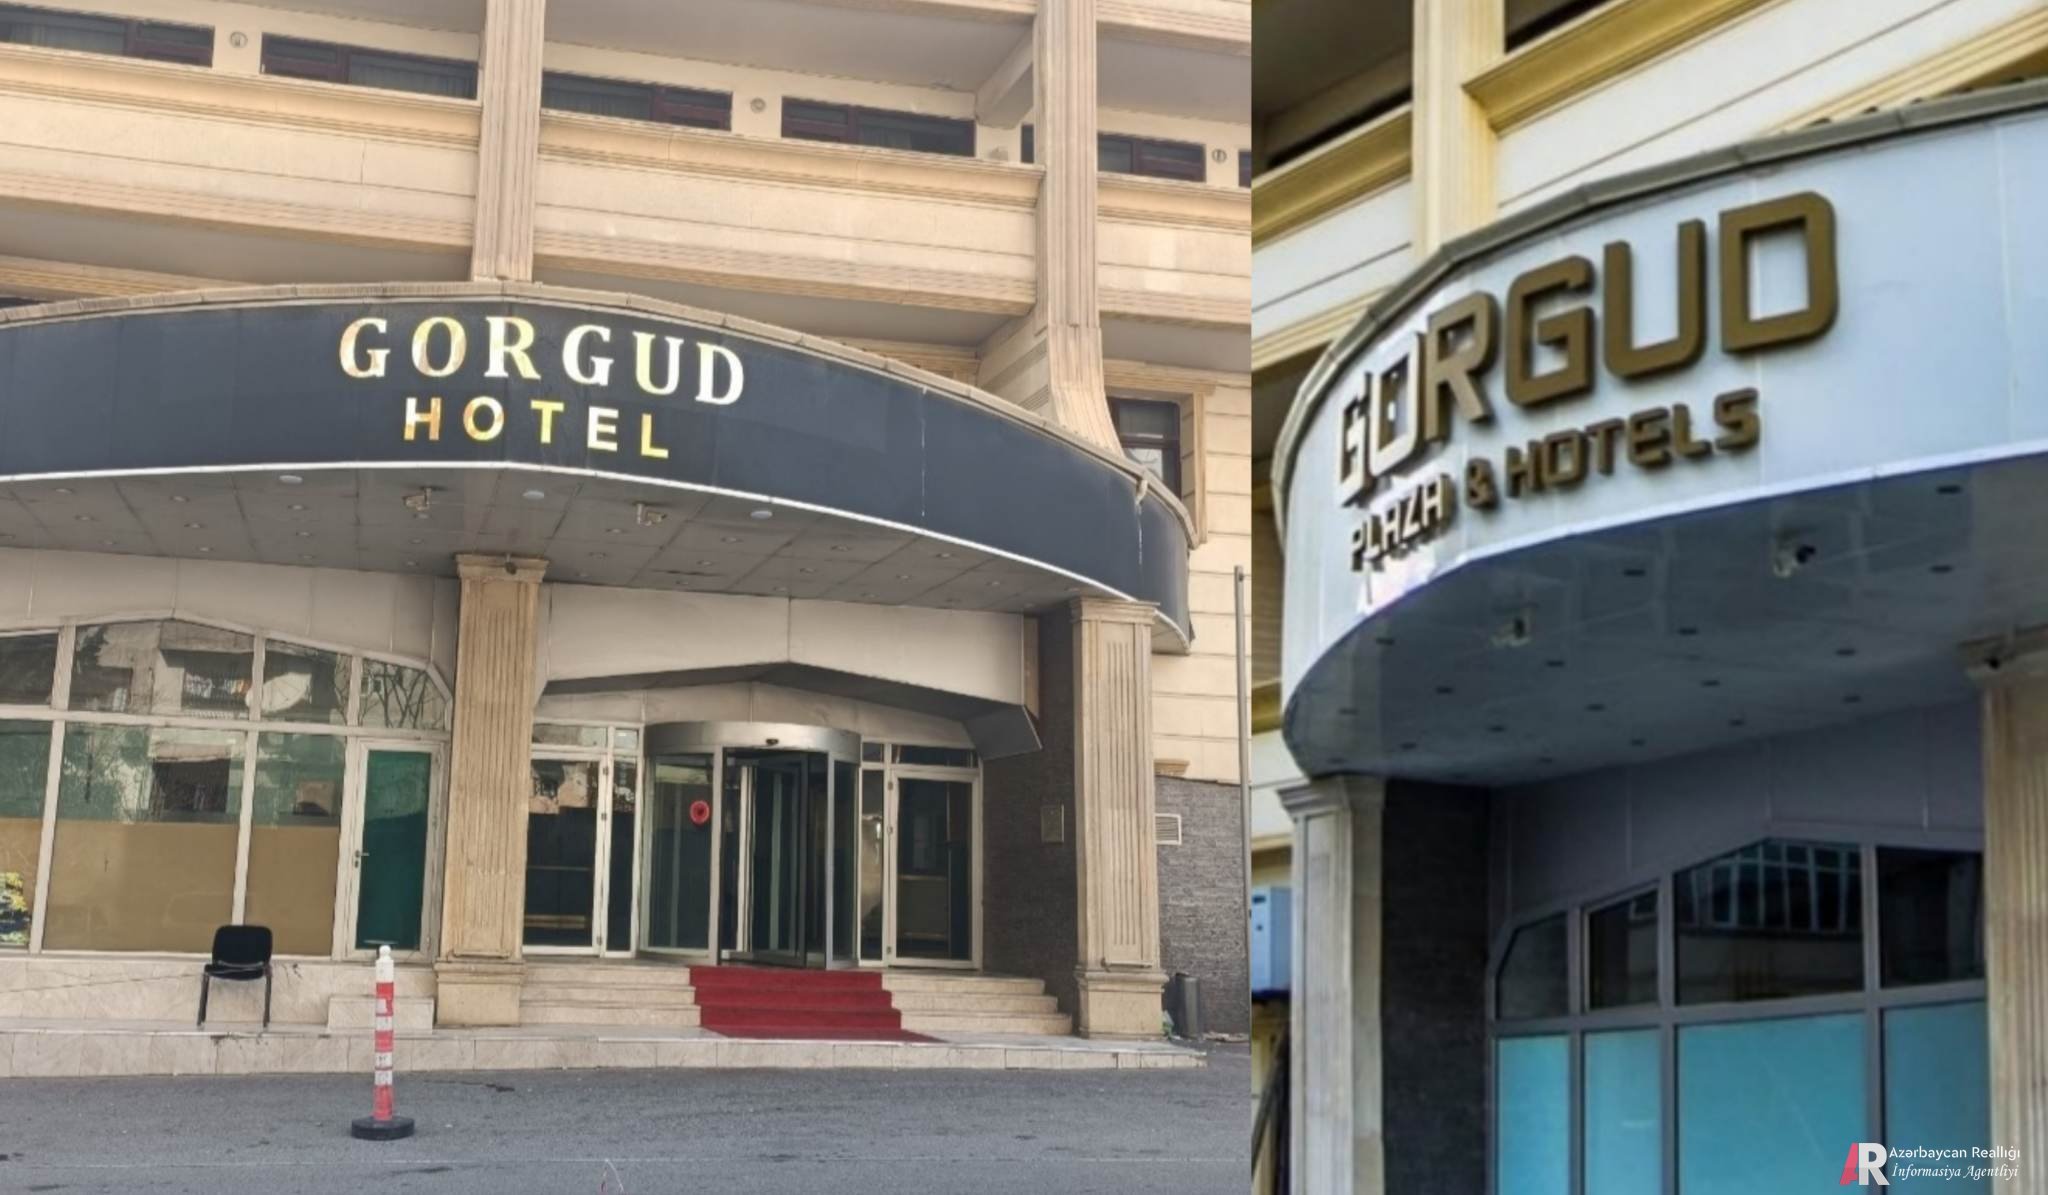 BU NƏDİ BELƏ: `Gorgud Hotel`də antisanitar vəziyyət... - Özü də turist sezonudur ha...